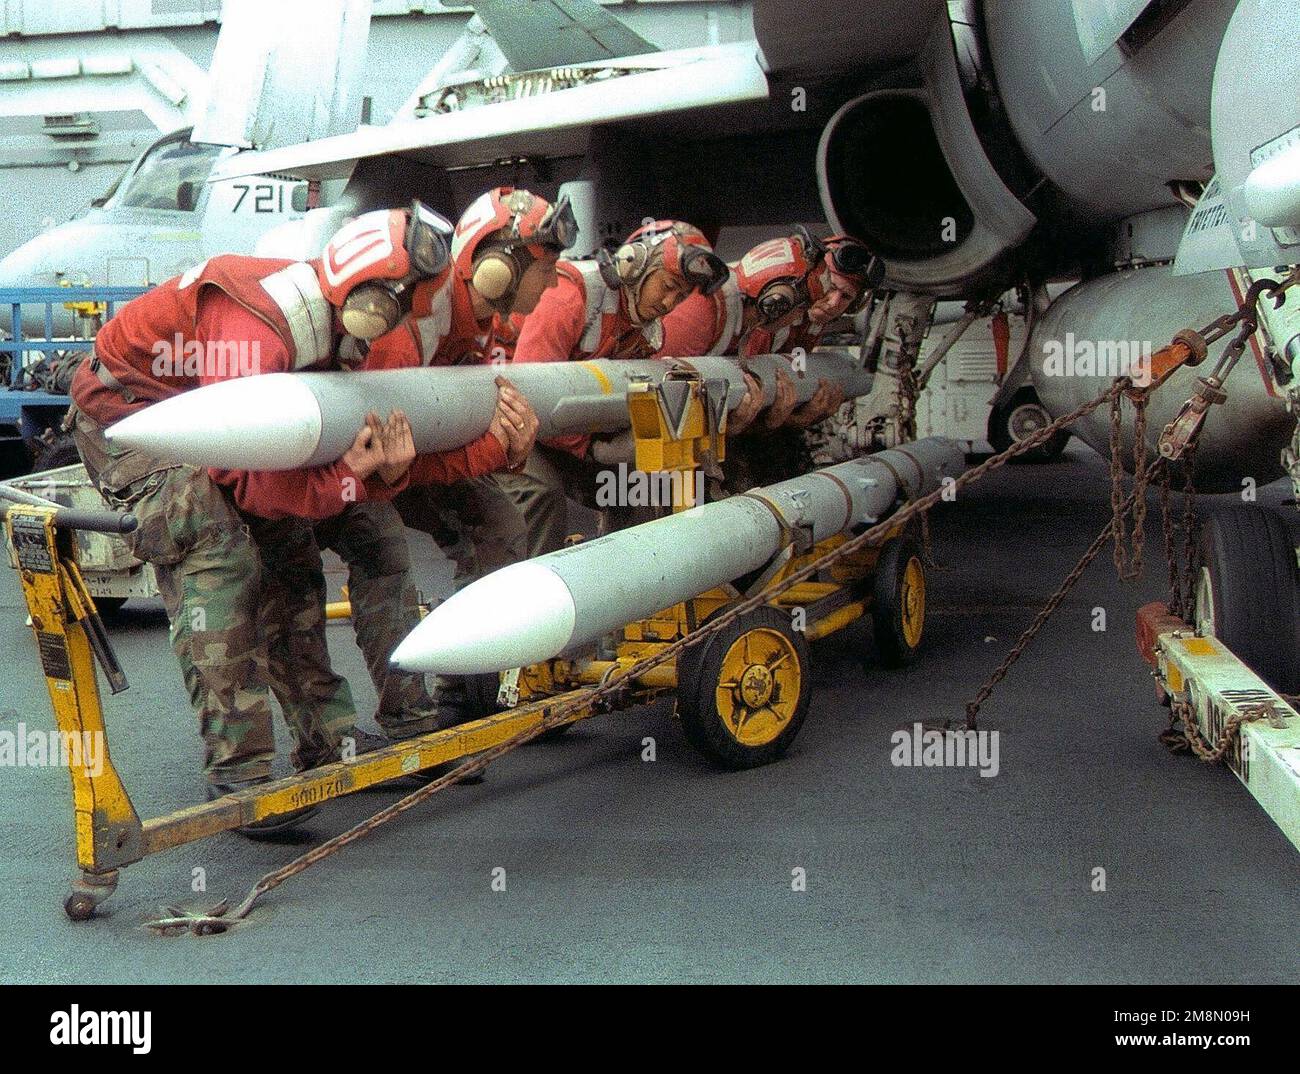 US Navy Aviation Ordnancemen (AO) carico AIM-7 Sparrow medio raggio, radar guidato aria-aria missili su un F/A-18 Hornet assegnato al vettore Air Wing Five (CVW-5). La portaerei di trasporto USS INDEPENDENCE (CV 62) e CVW-5 hanno preso posto nel Golfo Persico per liberare la portaerei nucleare USS NIMITZ (CVN 68). L'INDIPENDENZA applicherà le sanzioni delle Nazioni Unite contro l'Iraq nell'ambito dell'operazione Southern Watch, il 7 febbraio 1998. STATI UNITI FOTO della Marina di Mate AIRMAN Brian J. Hoosack (rilasciato) Digital Film Scan. Soggetto operativo/Serie: SOUTHERN WATCH base: USS Independen Foto Stock